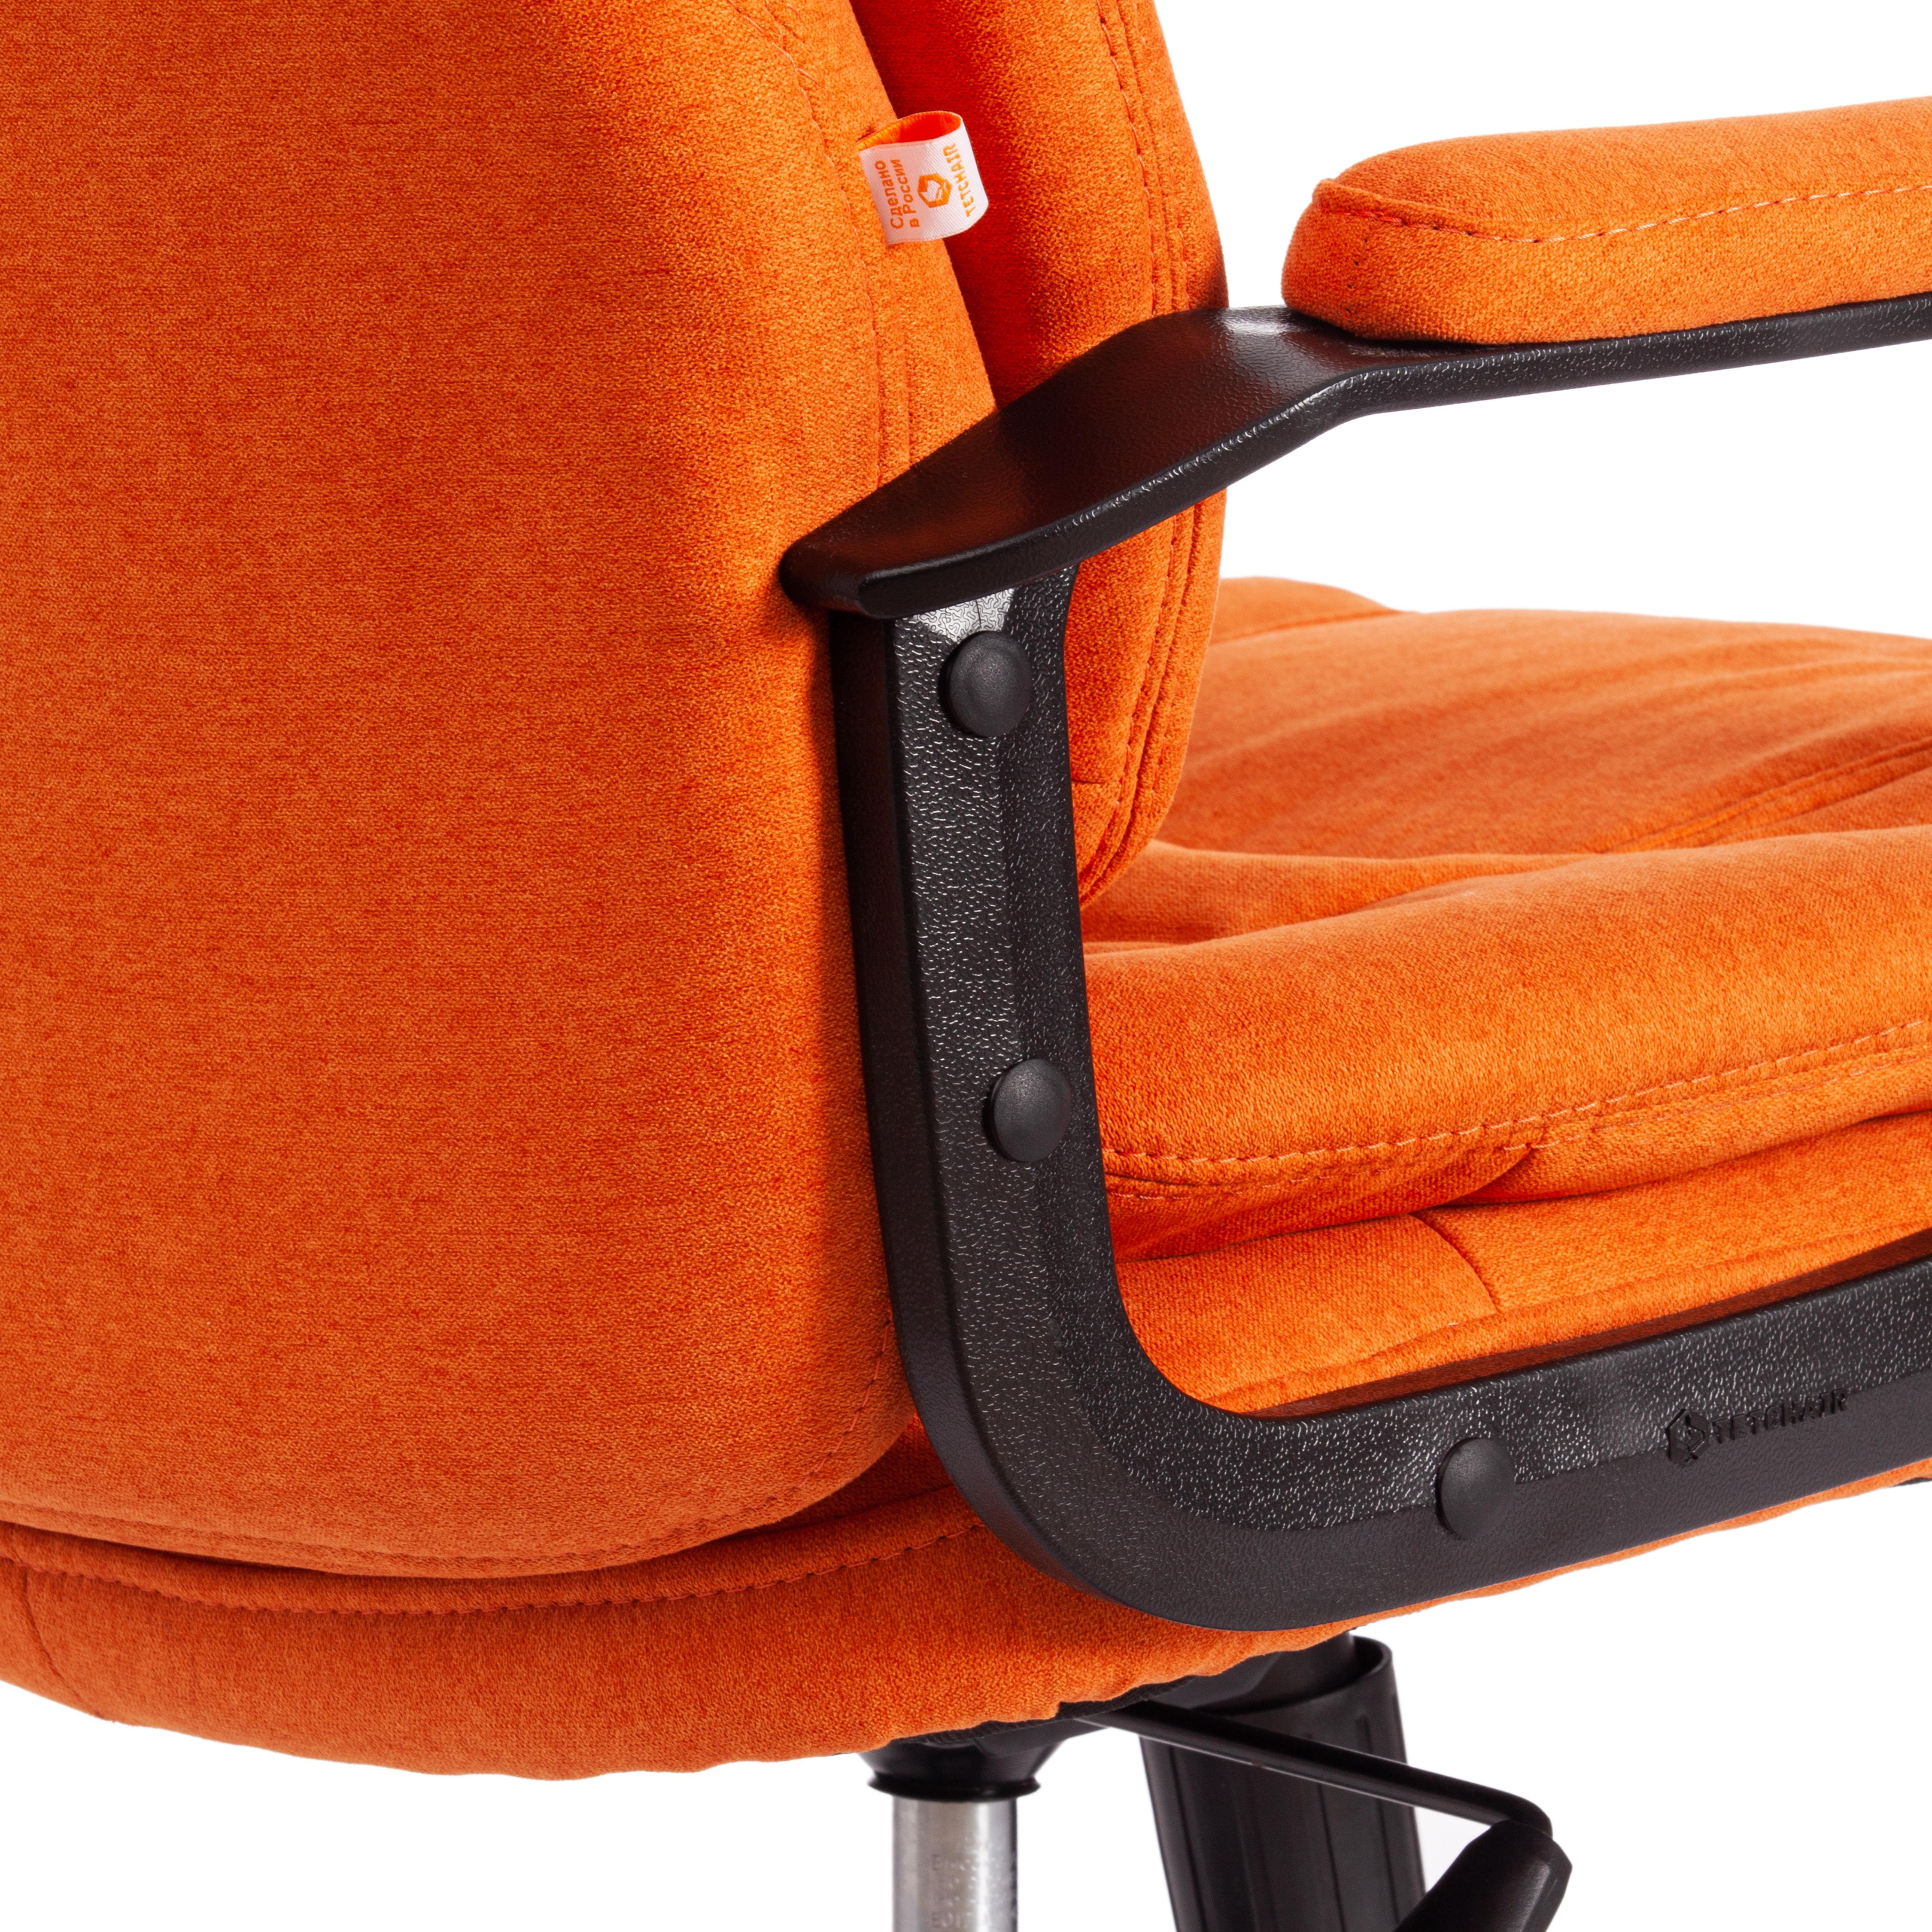 Кресло COMFORT LT (22) ткань scandi, оранжевый, 8